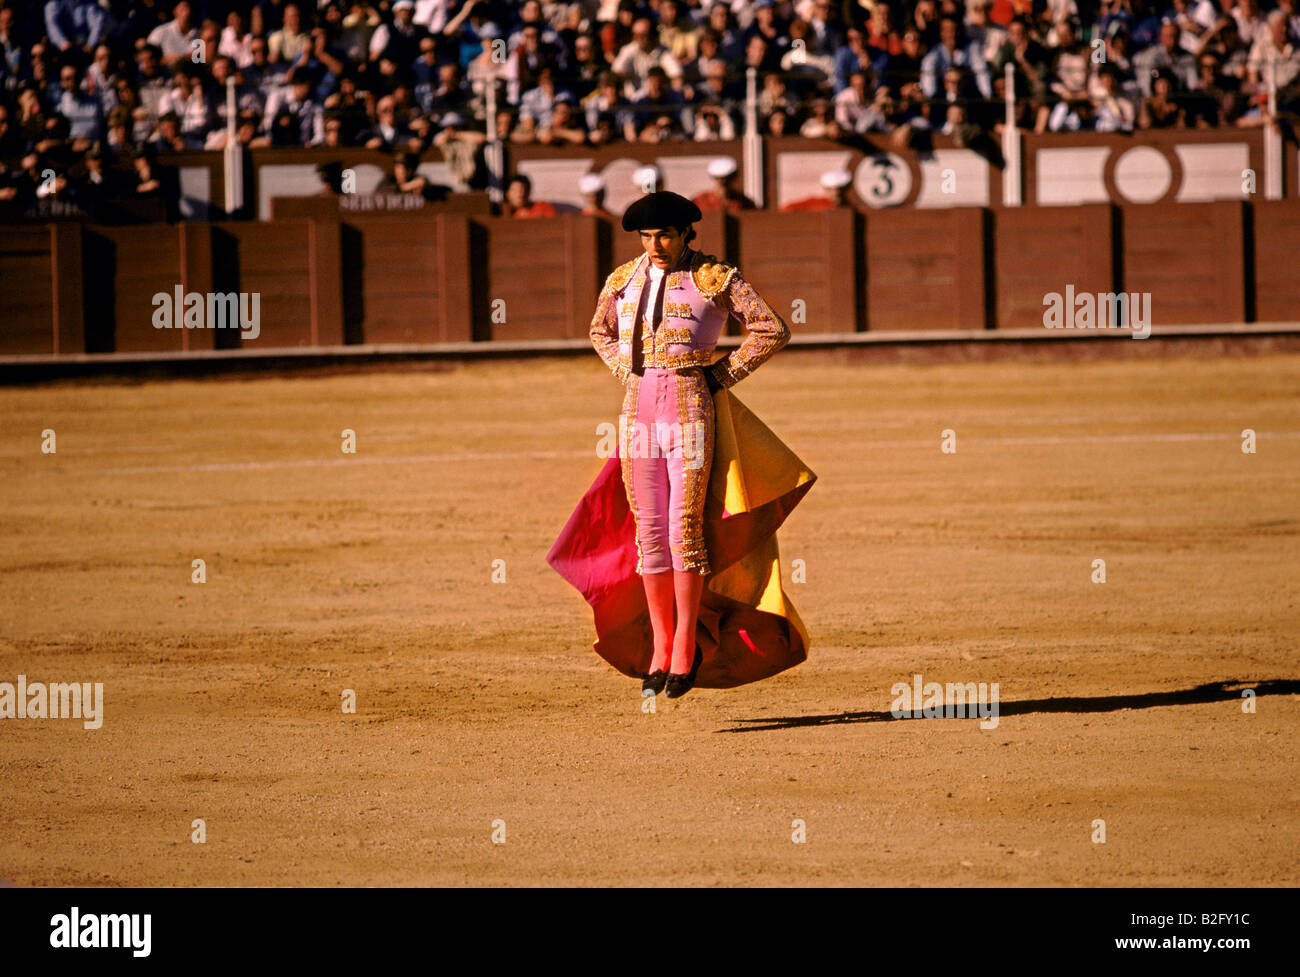 Matador saltando sul posto al centro dello stadio durante una corrida Foto Stock